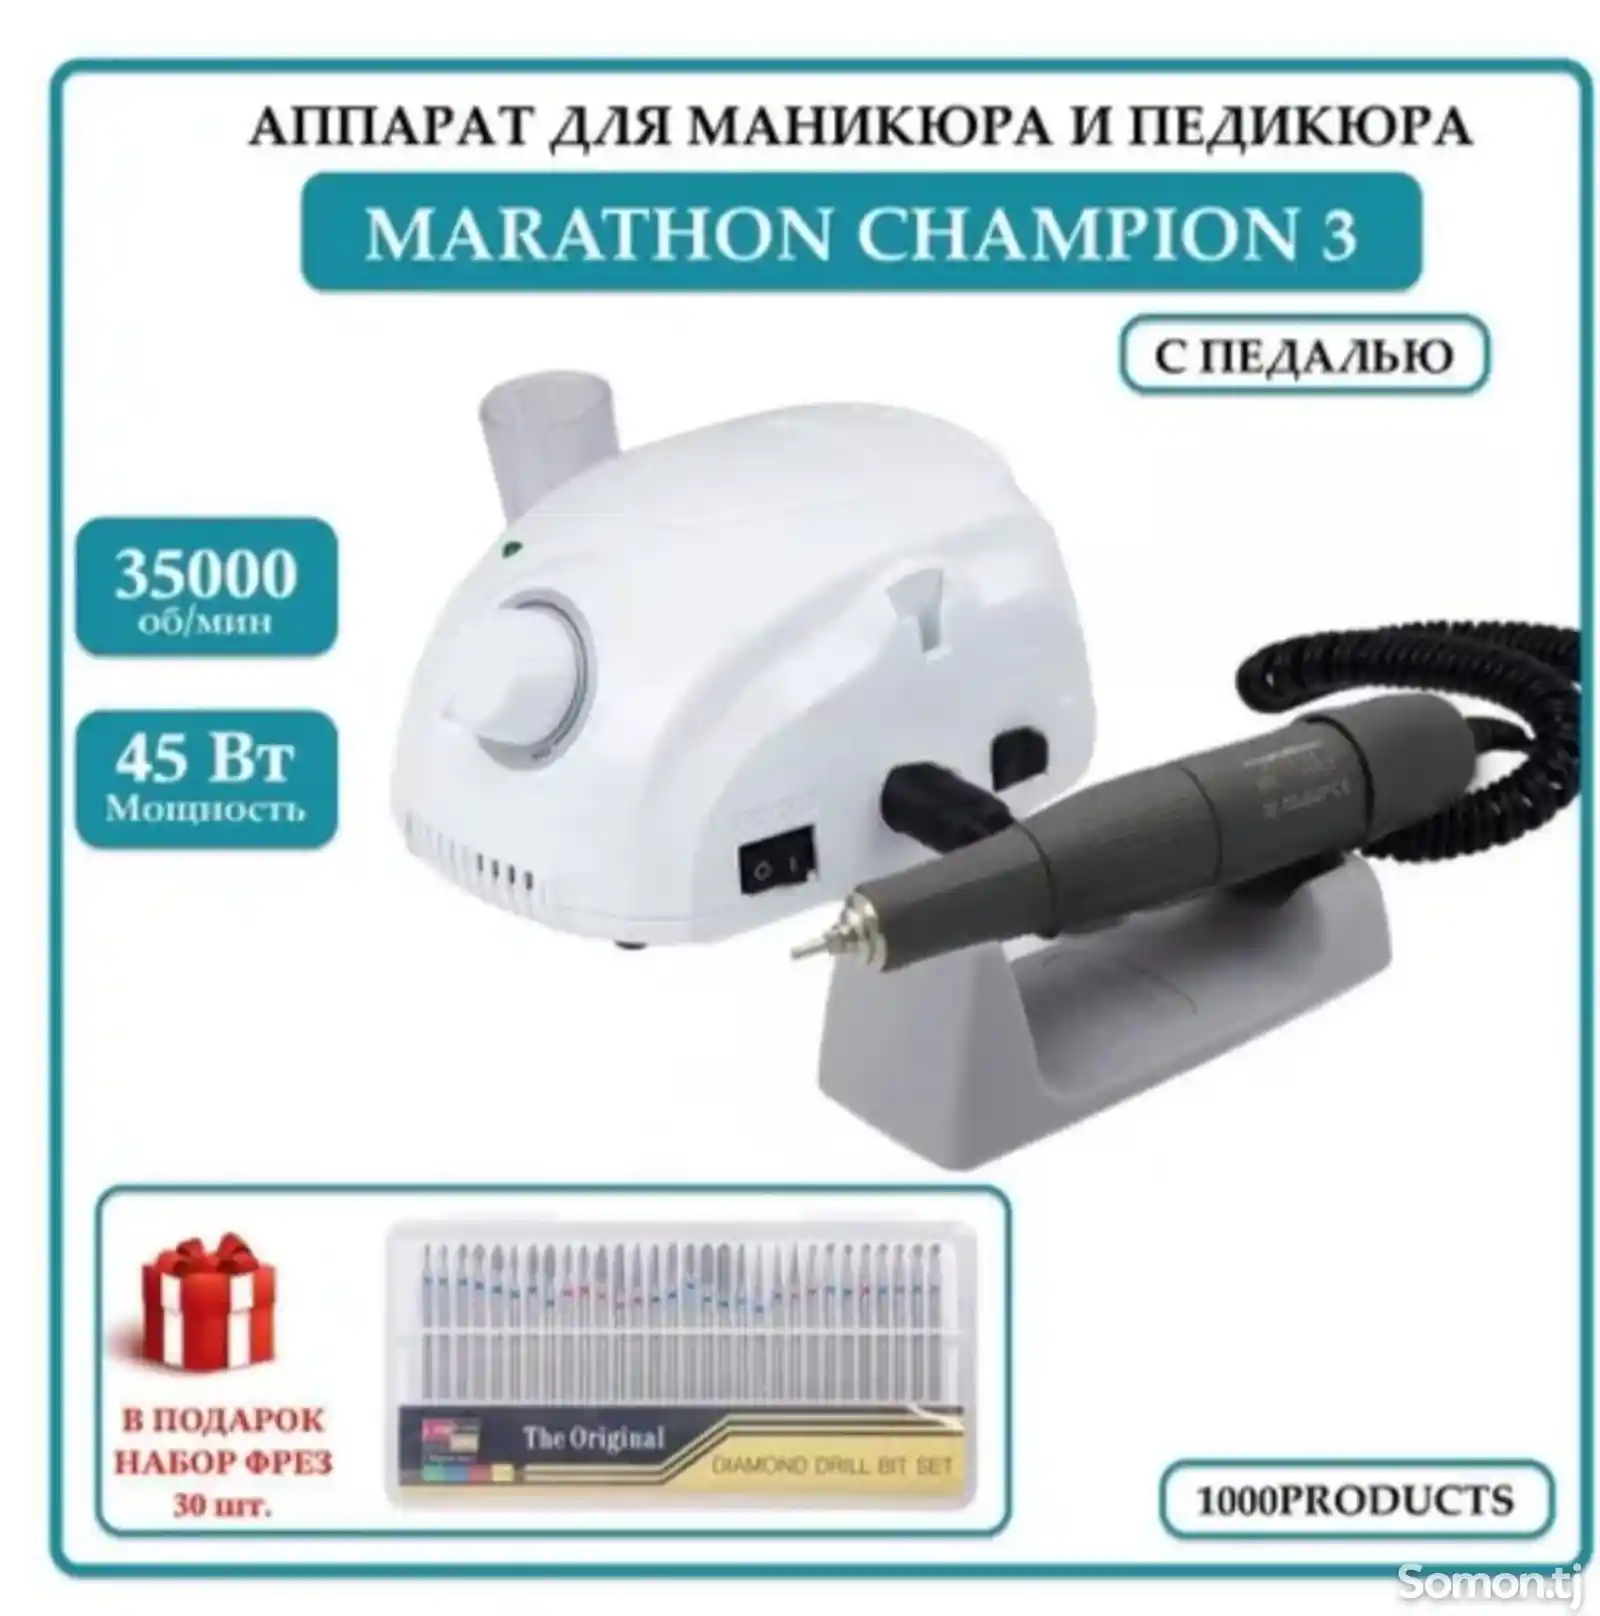 Аппарат для маникюра с наконечником Marathon 3 Champion-2